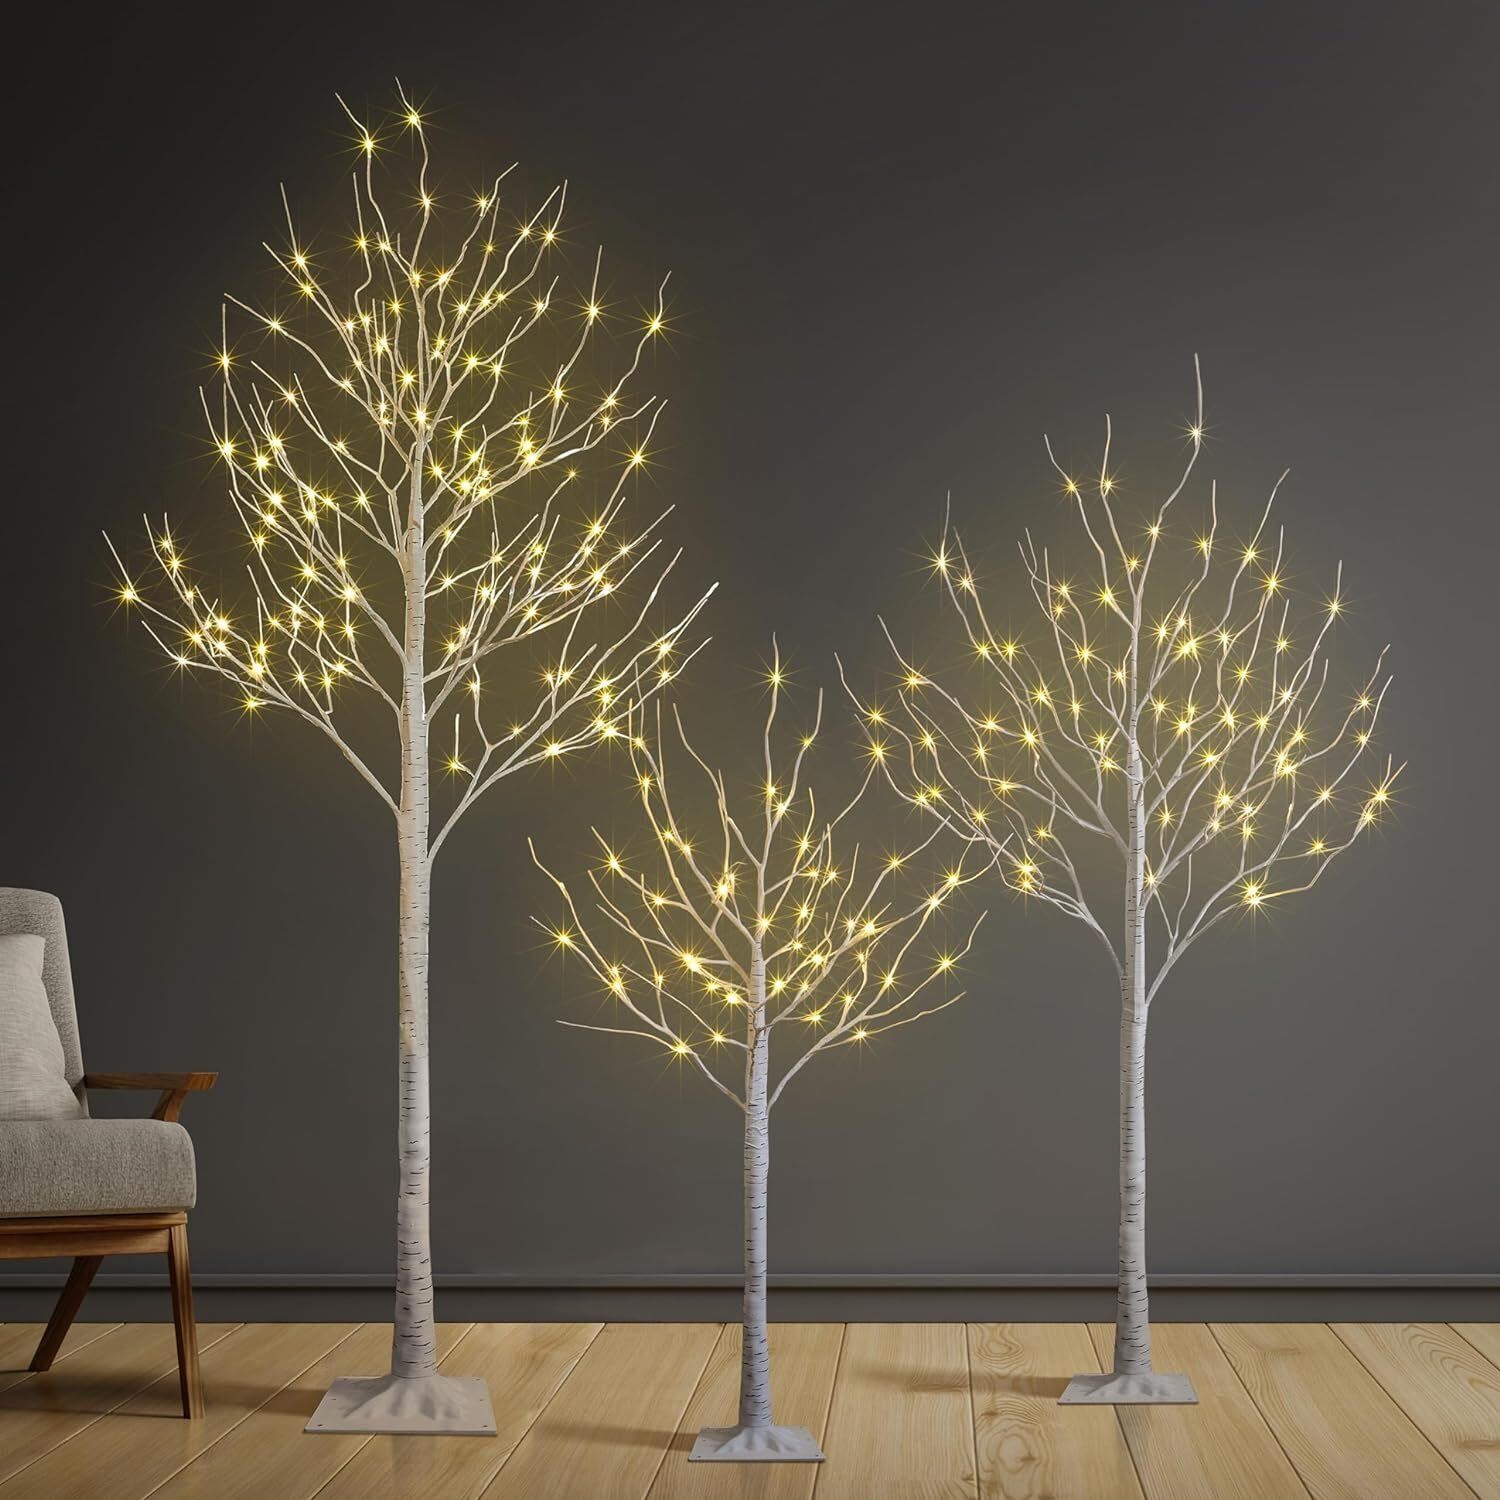 Set of 3 Lighted Birch Tree 4FT 6FT 8FT LED